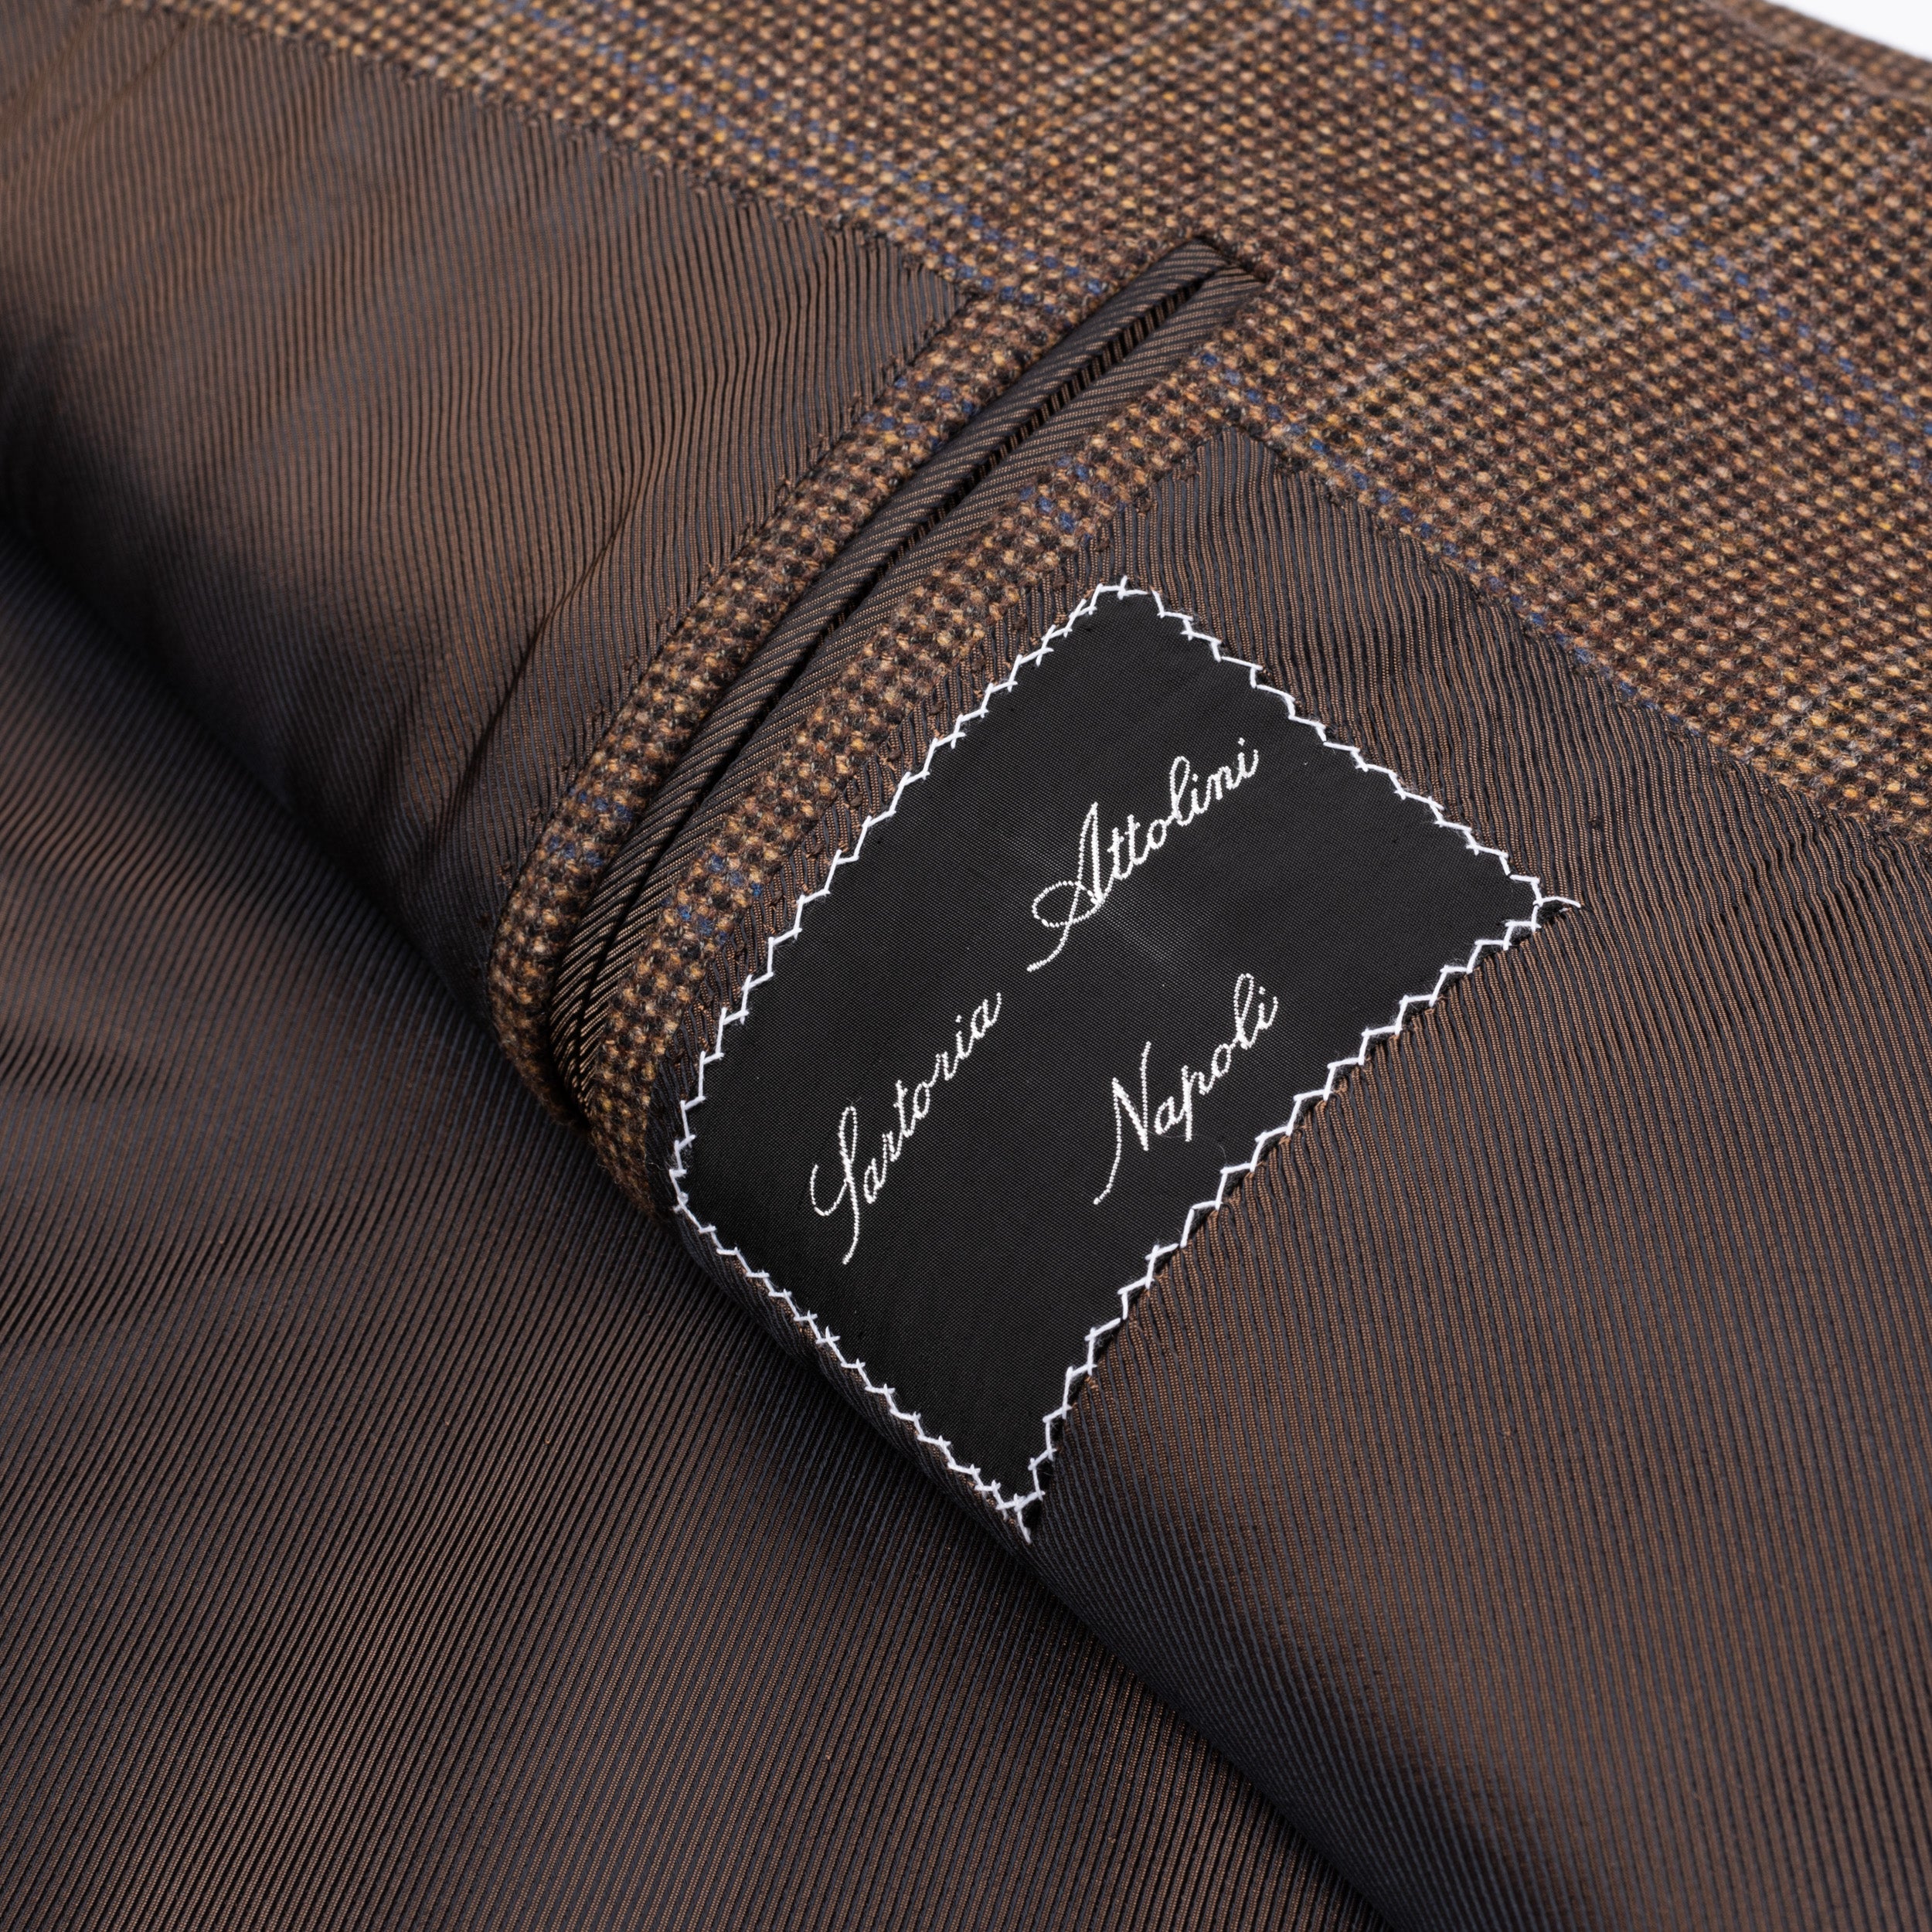 CESARE ATTOLINI Napoli Brown Nailhead Wool Flannel Blazer Jacket EU 50 NEW US 40 CESARE ATTOLINI